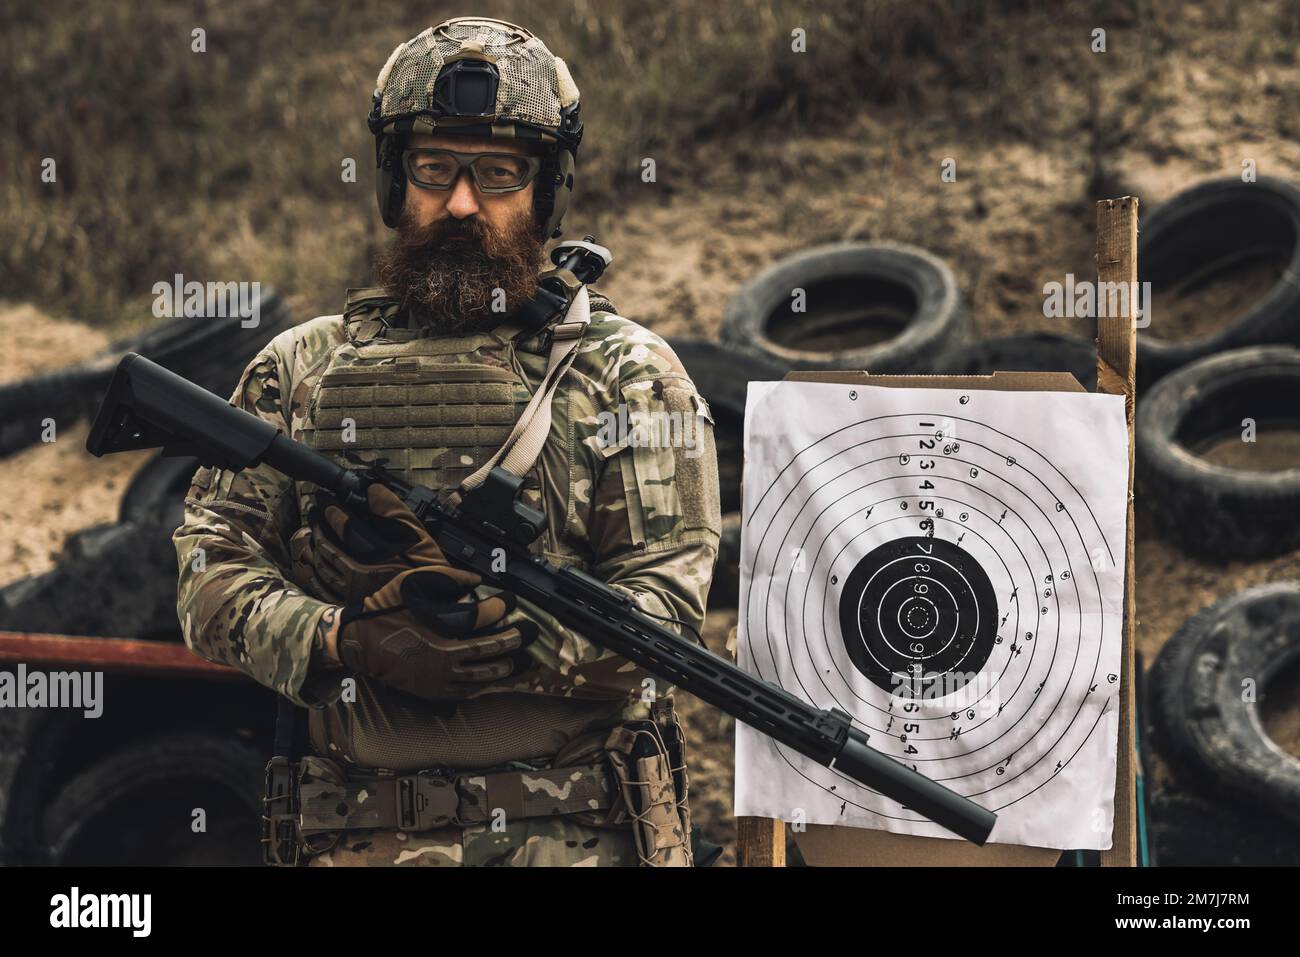 Soldat mûr debout près de la cible de tir avec le fusil dans les mains Banque D'Images